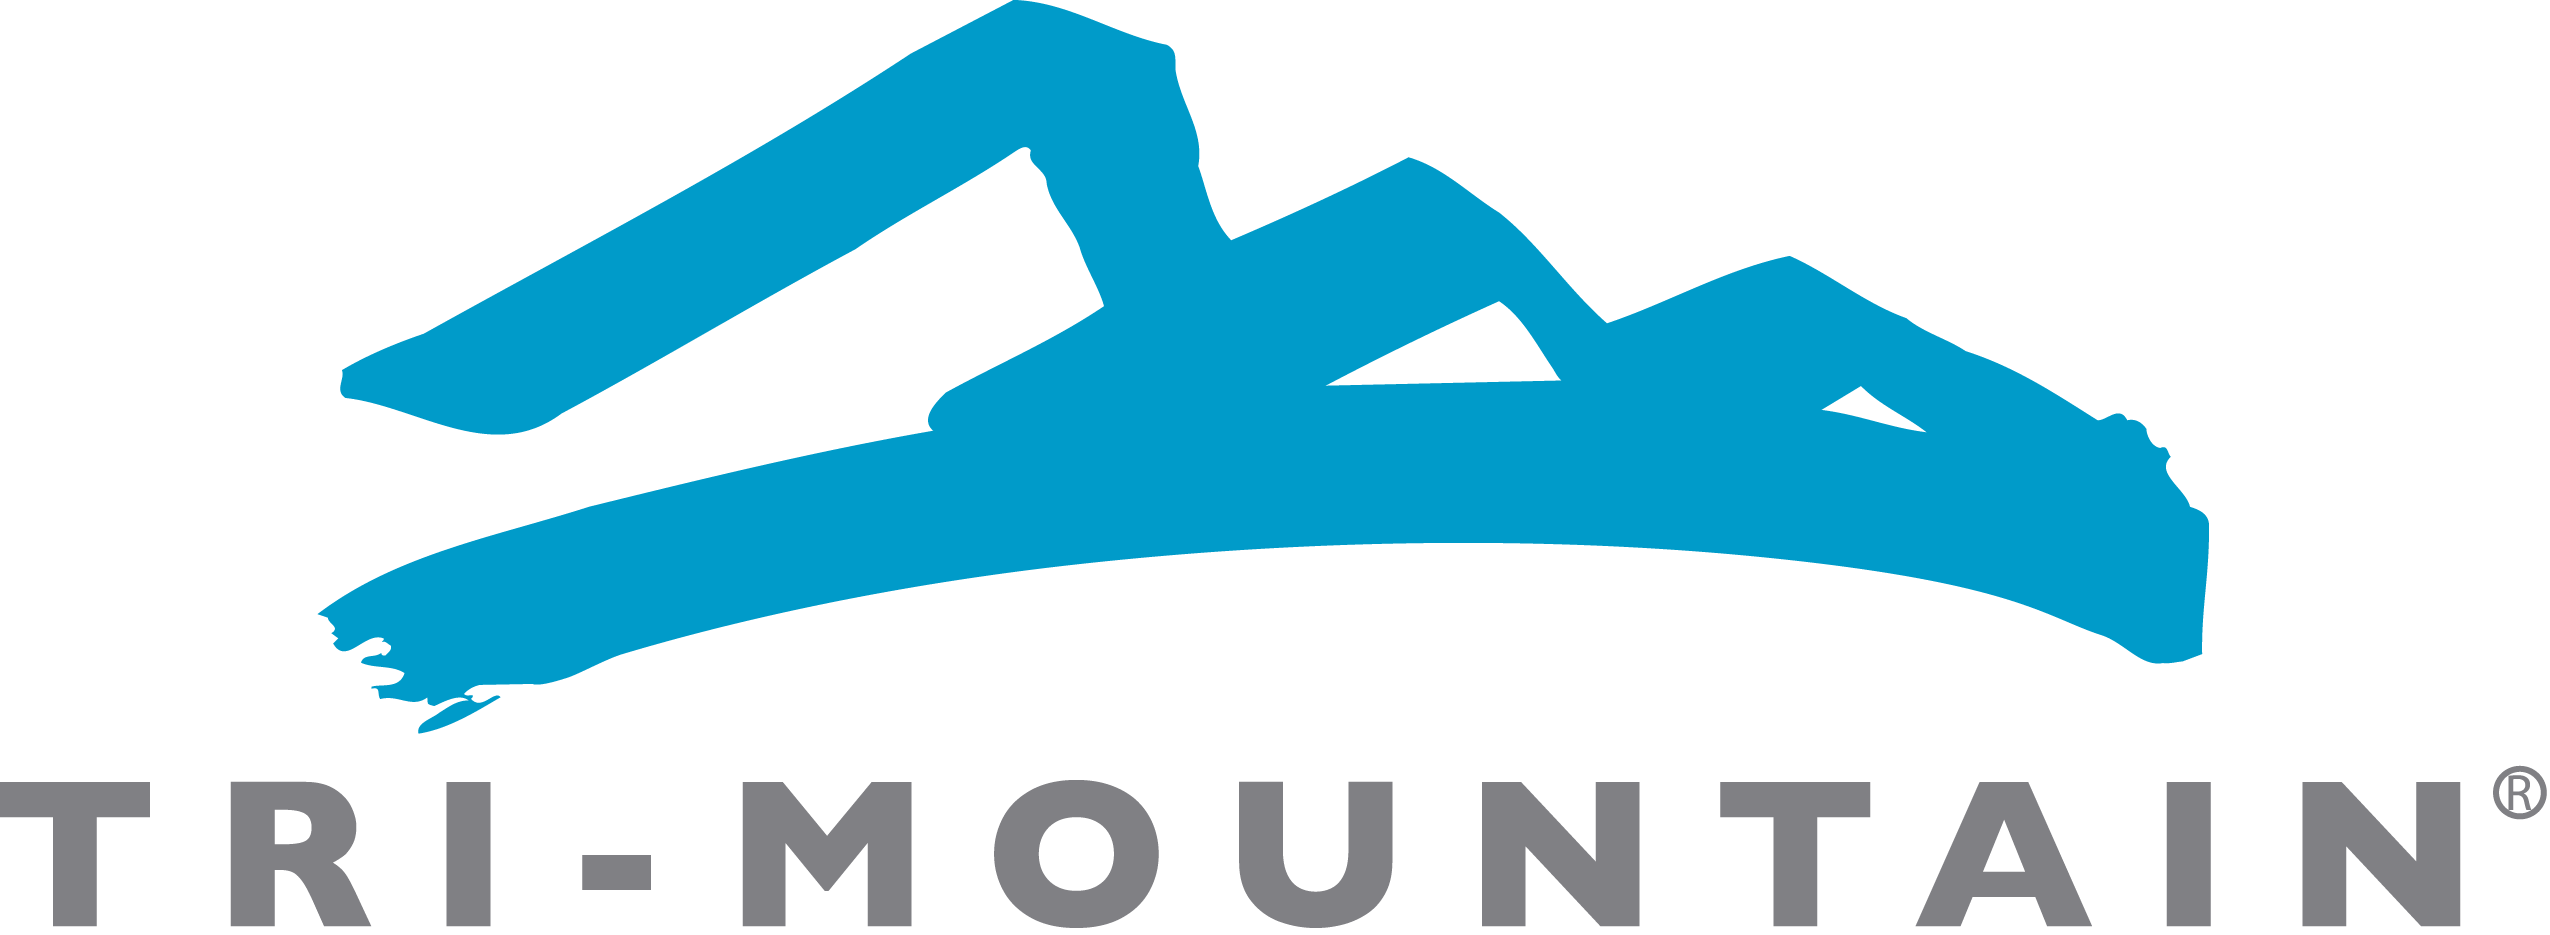 Tri-Mountain Logo - Tri Mountain Logo | FW Promo